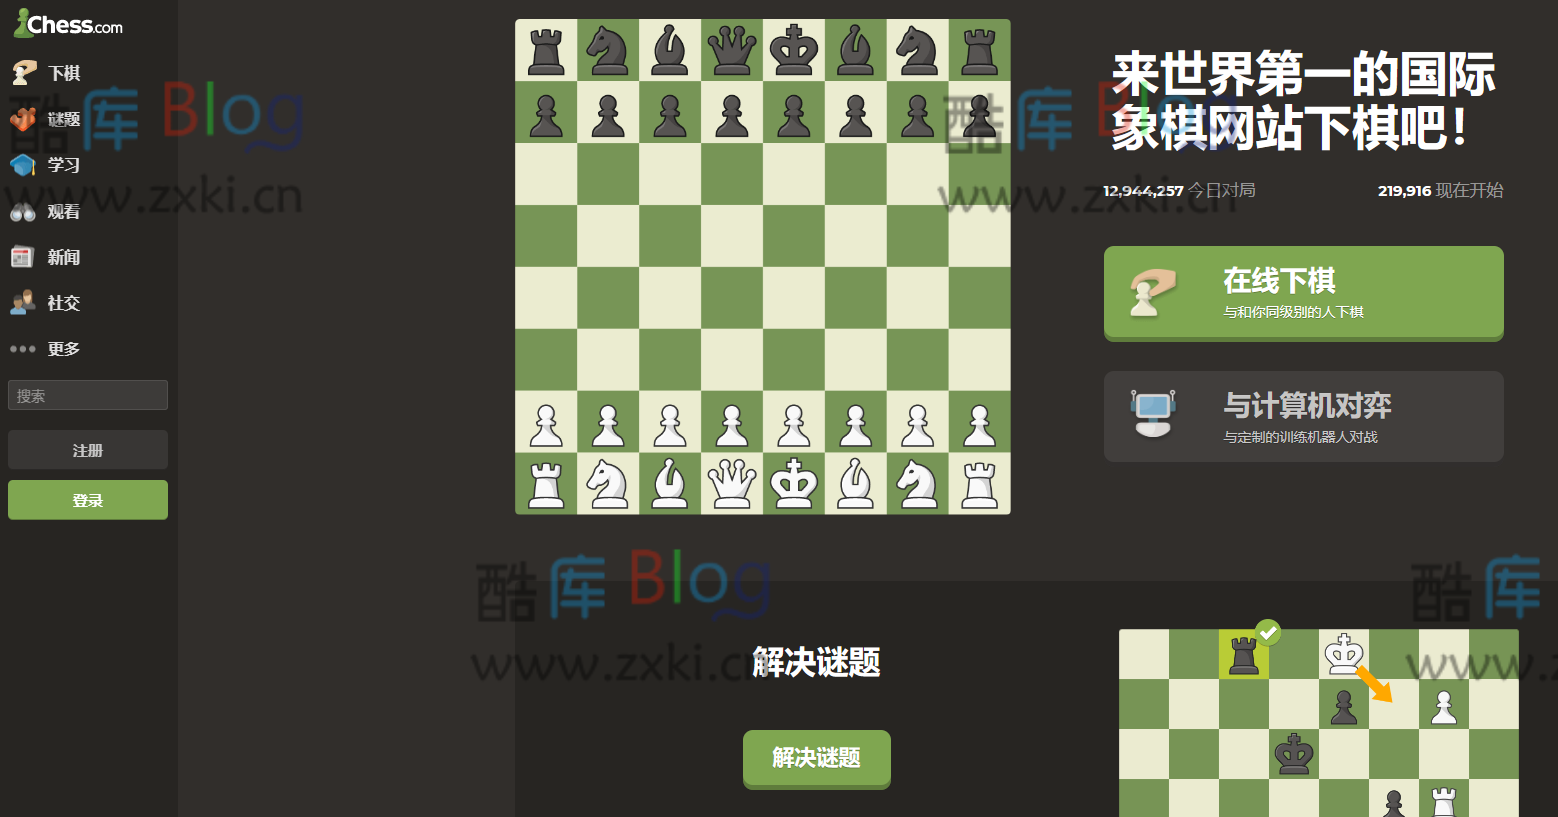 Chess在线来一局国际象棋_视频教学和联机对战，轻松入门国际象棋 第2张插图